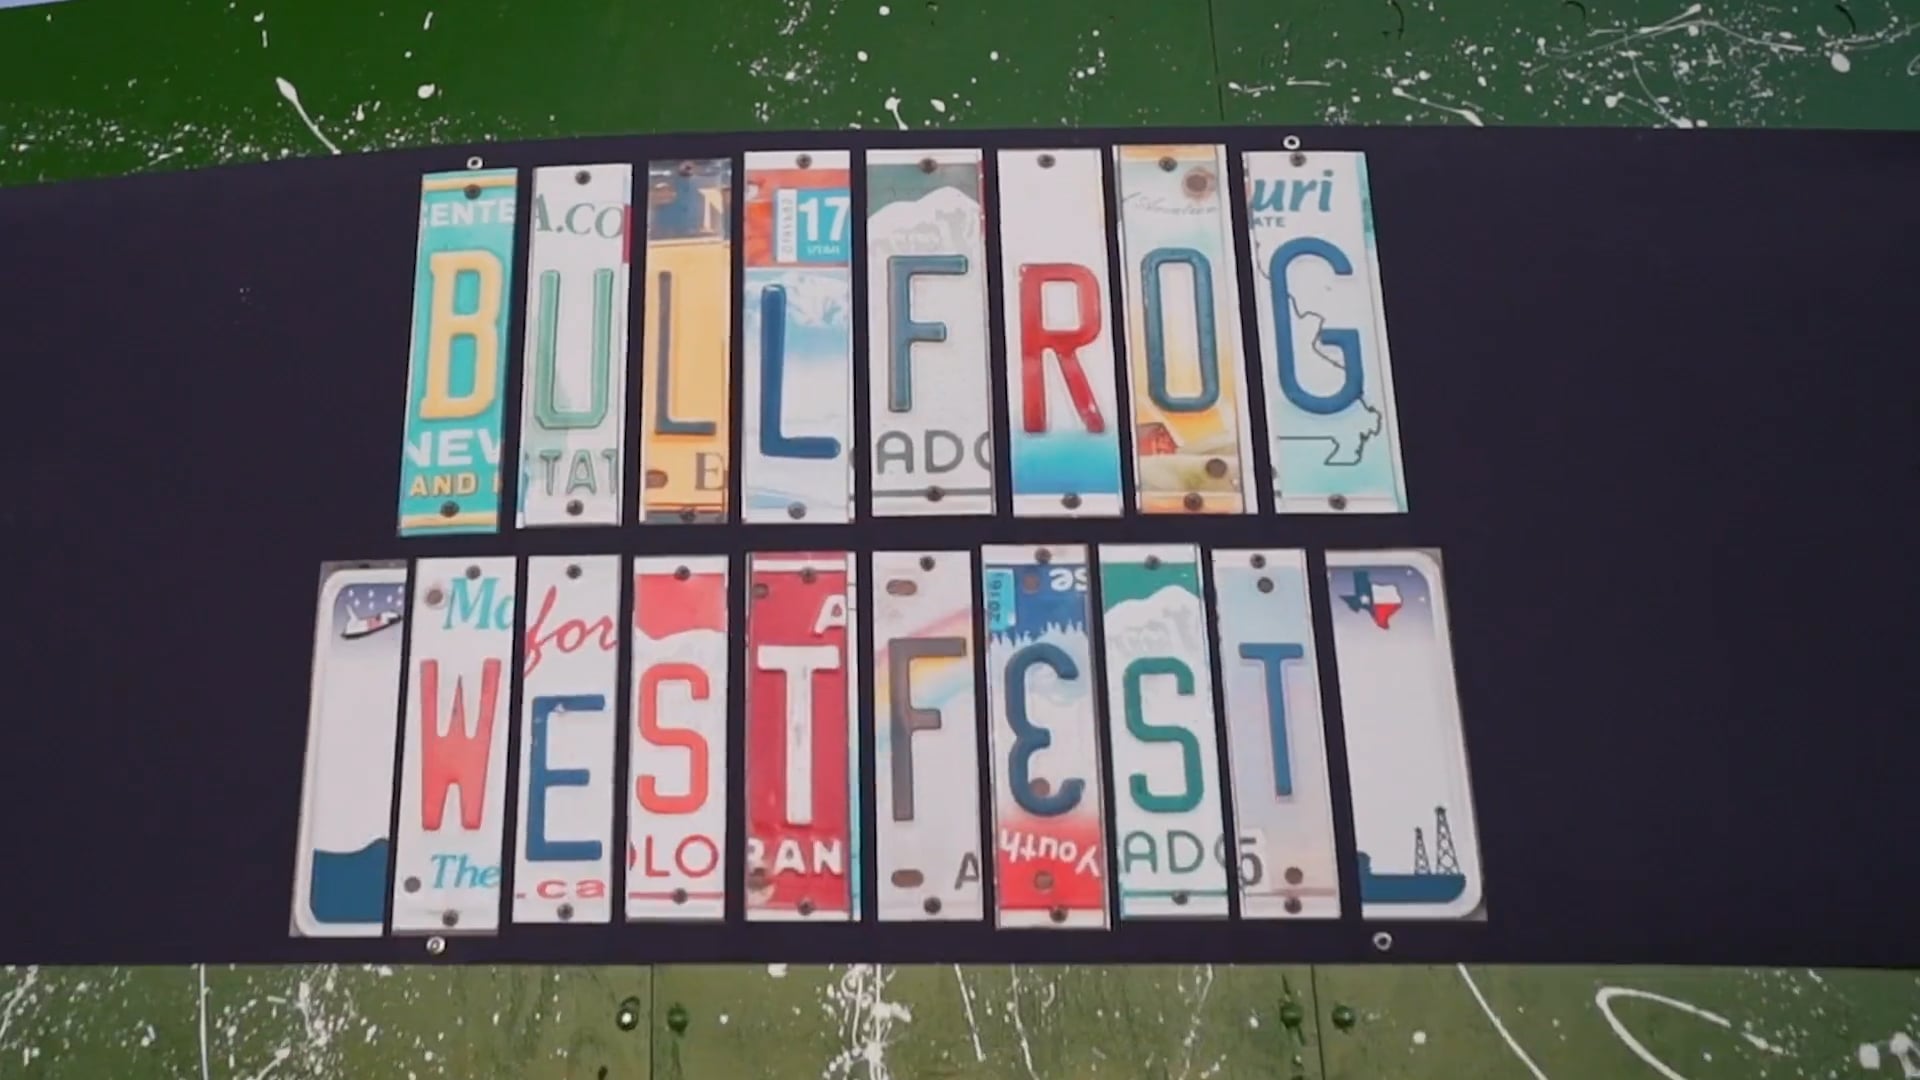 BULLFROG WEST FEST - 2019 || 613MEDIA